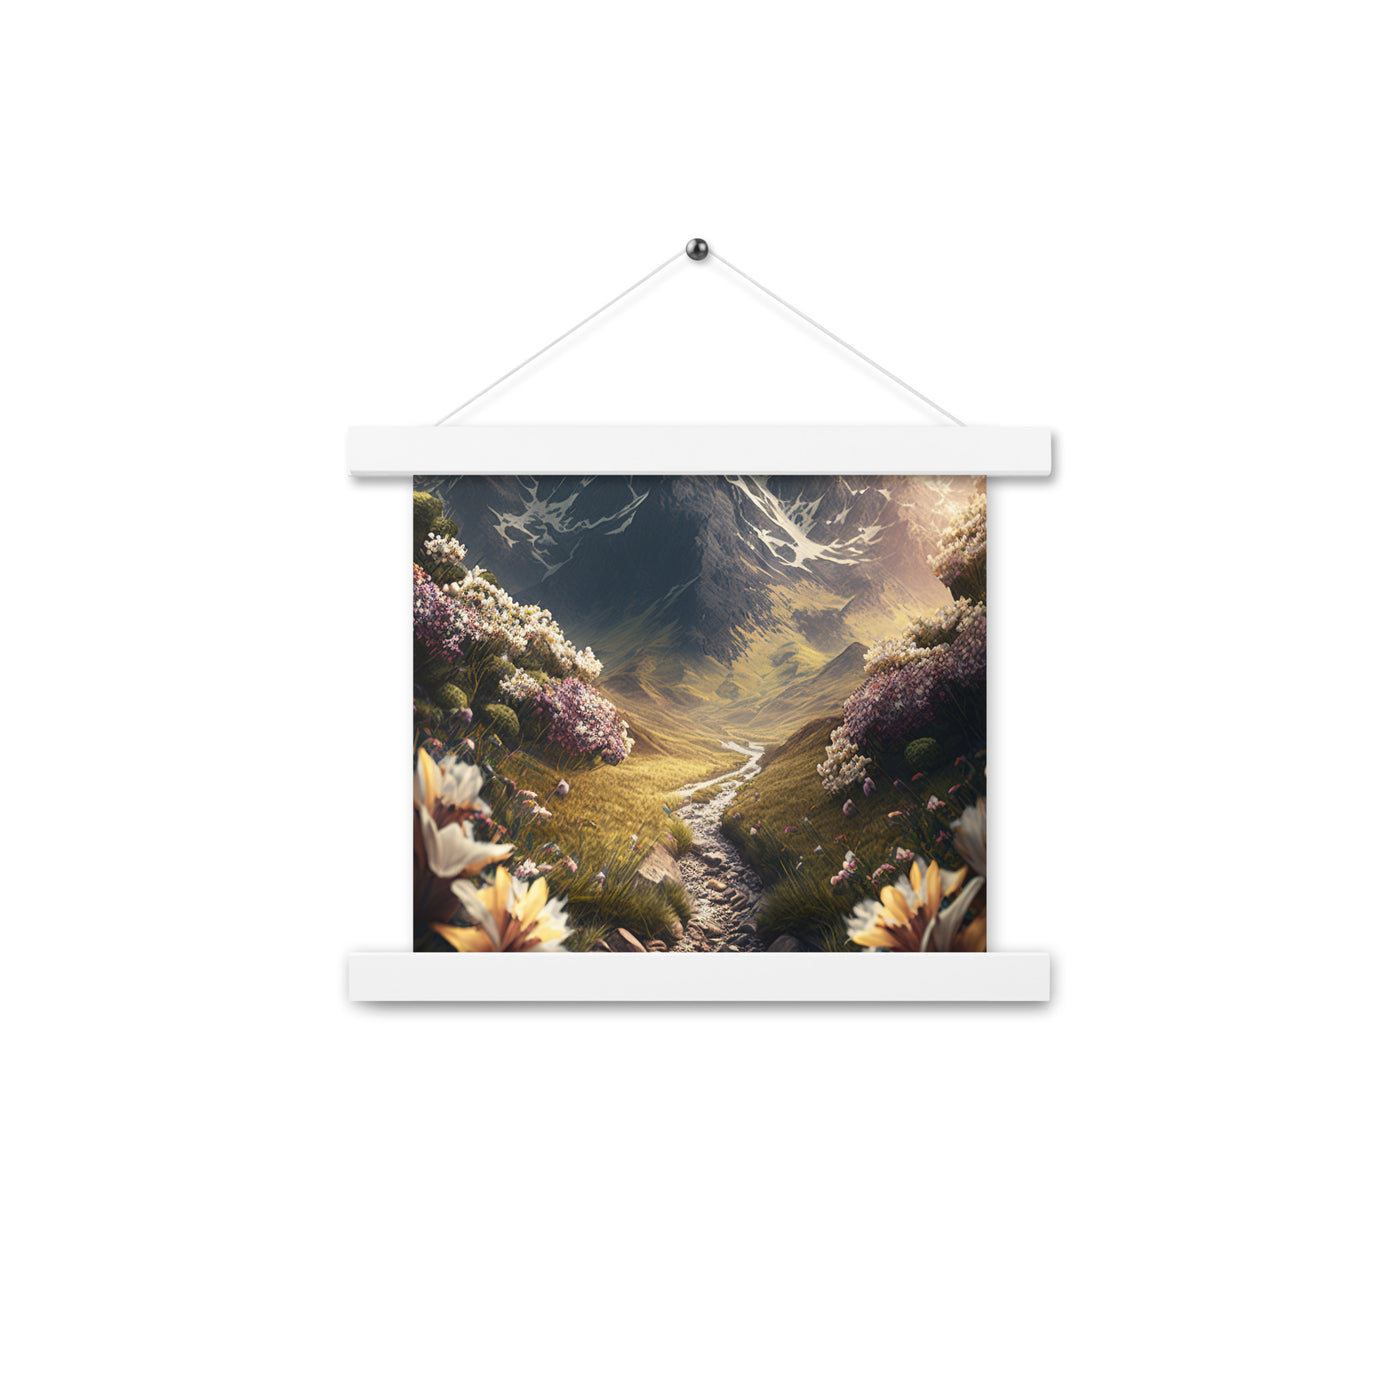 Epischer Berg, steiniger Weg und Blumen - Realistische Malerei - Premium Poster mit Aufhängung berge xxx 25.4 x 25.4 cm